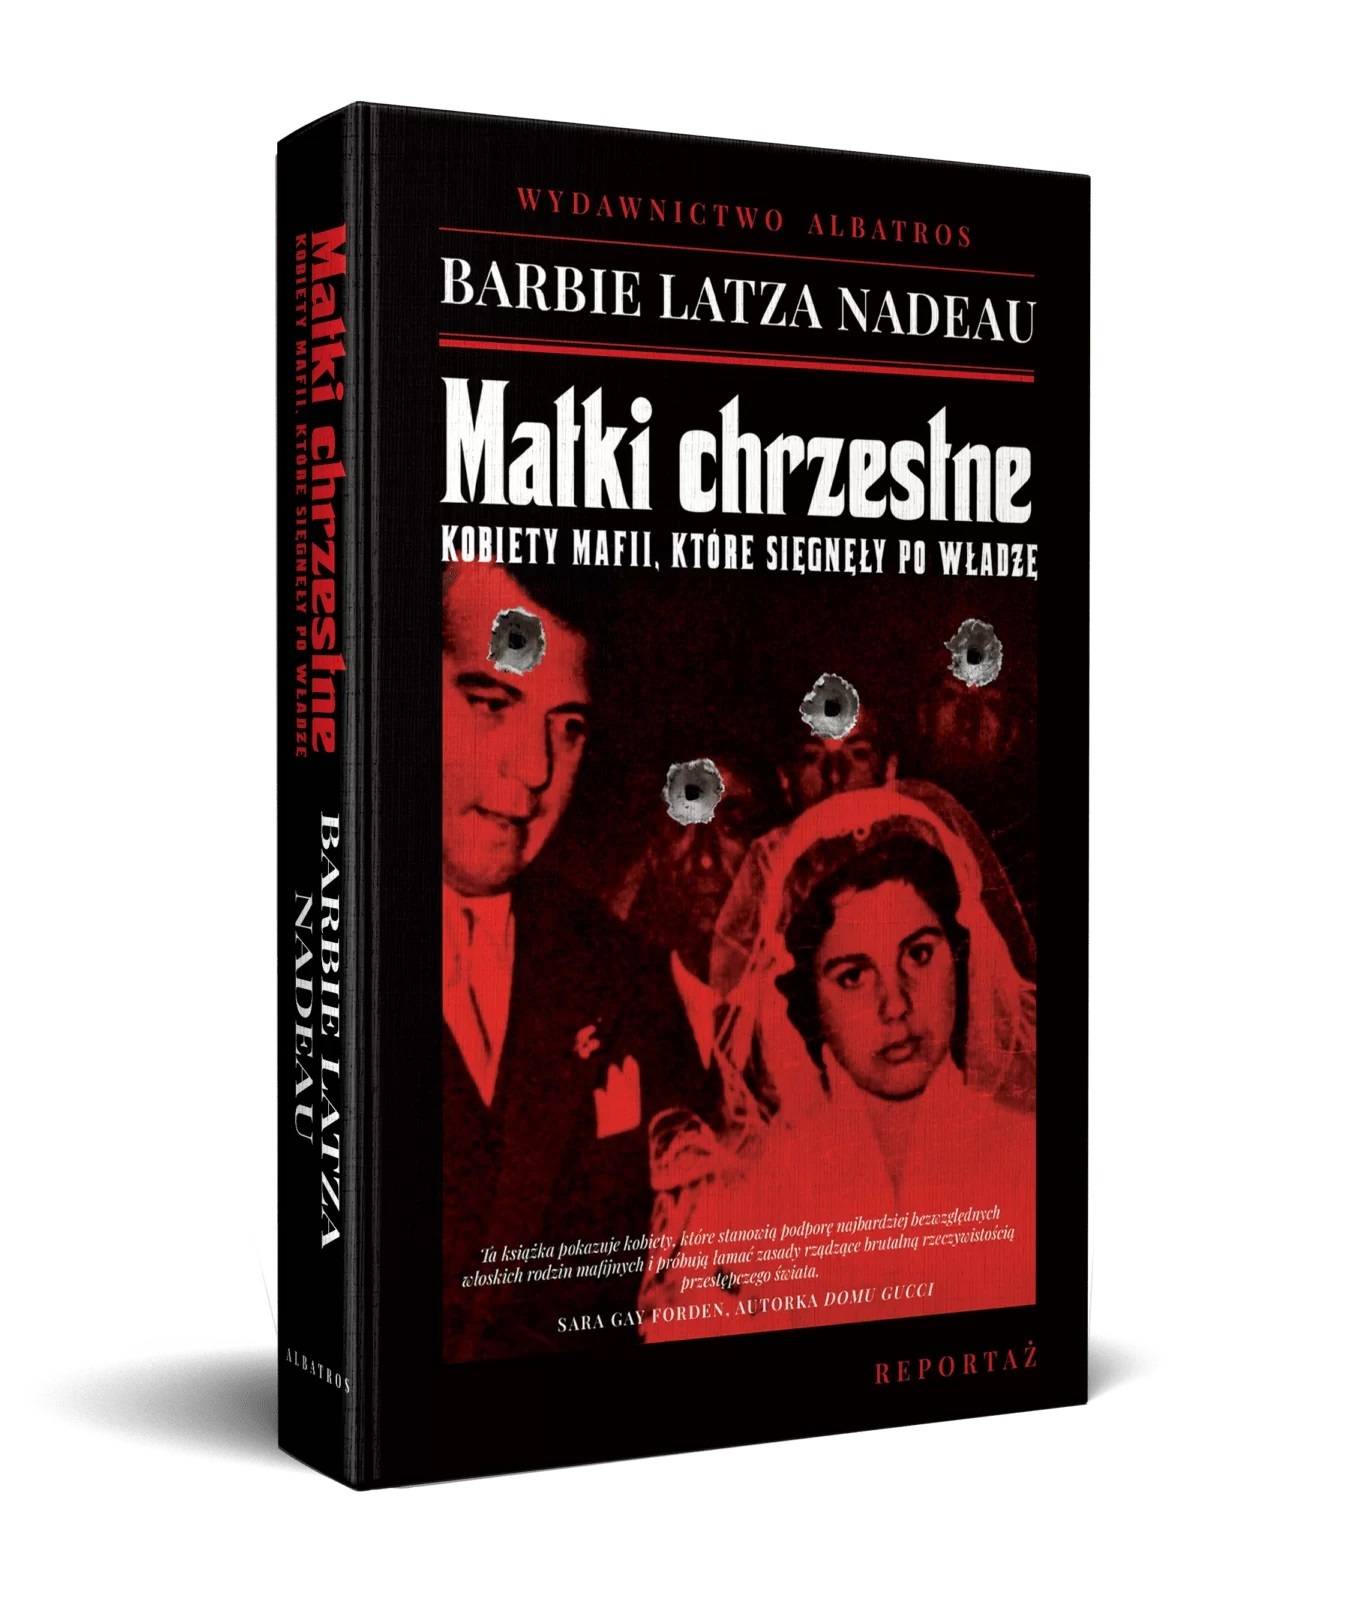 „Matki chrzestne. Kobiety mafii, które sięgnęły po władzę”, Barbie Latza Nadeau, tłumaczenie Xenia Wiśniewska, wydawnictwo Albatros